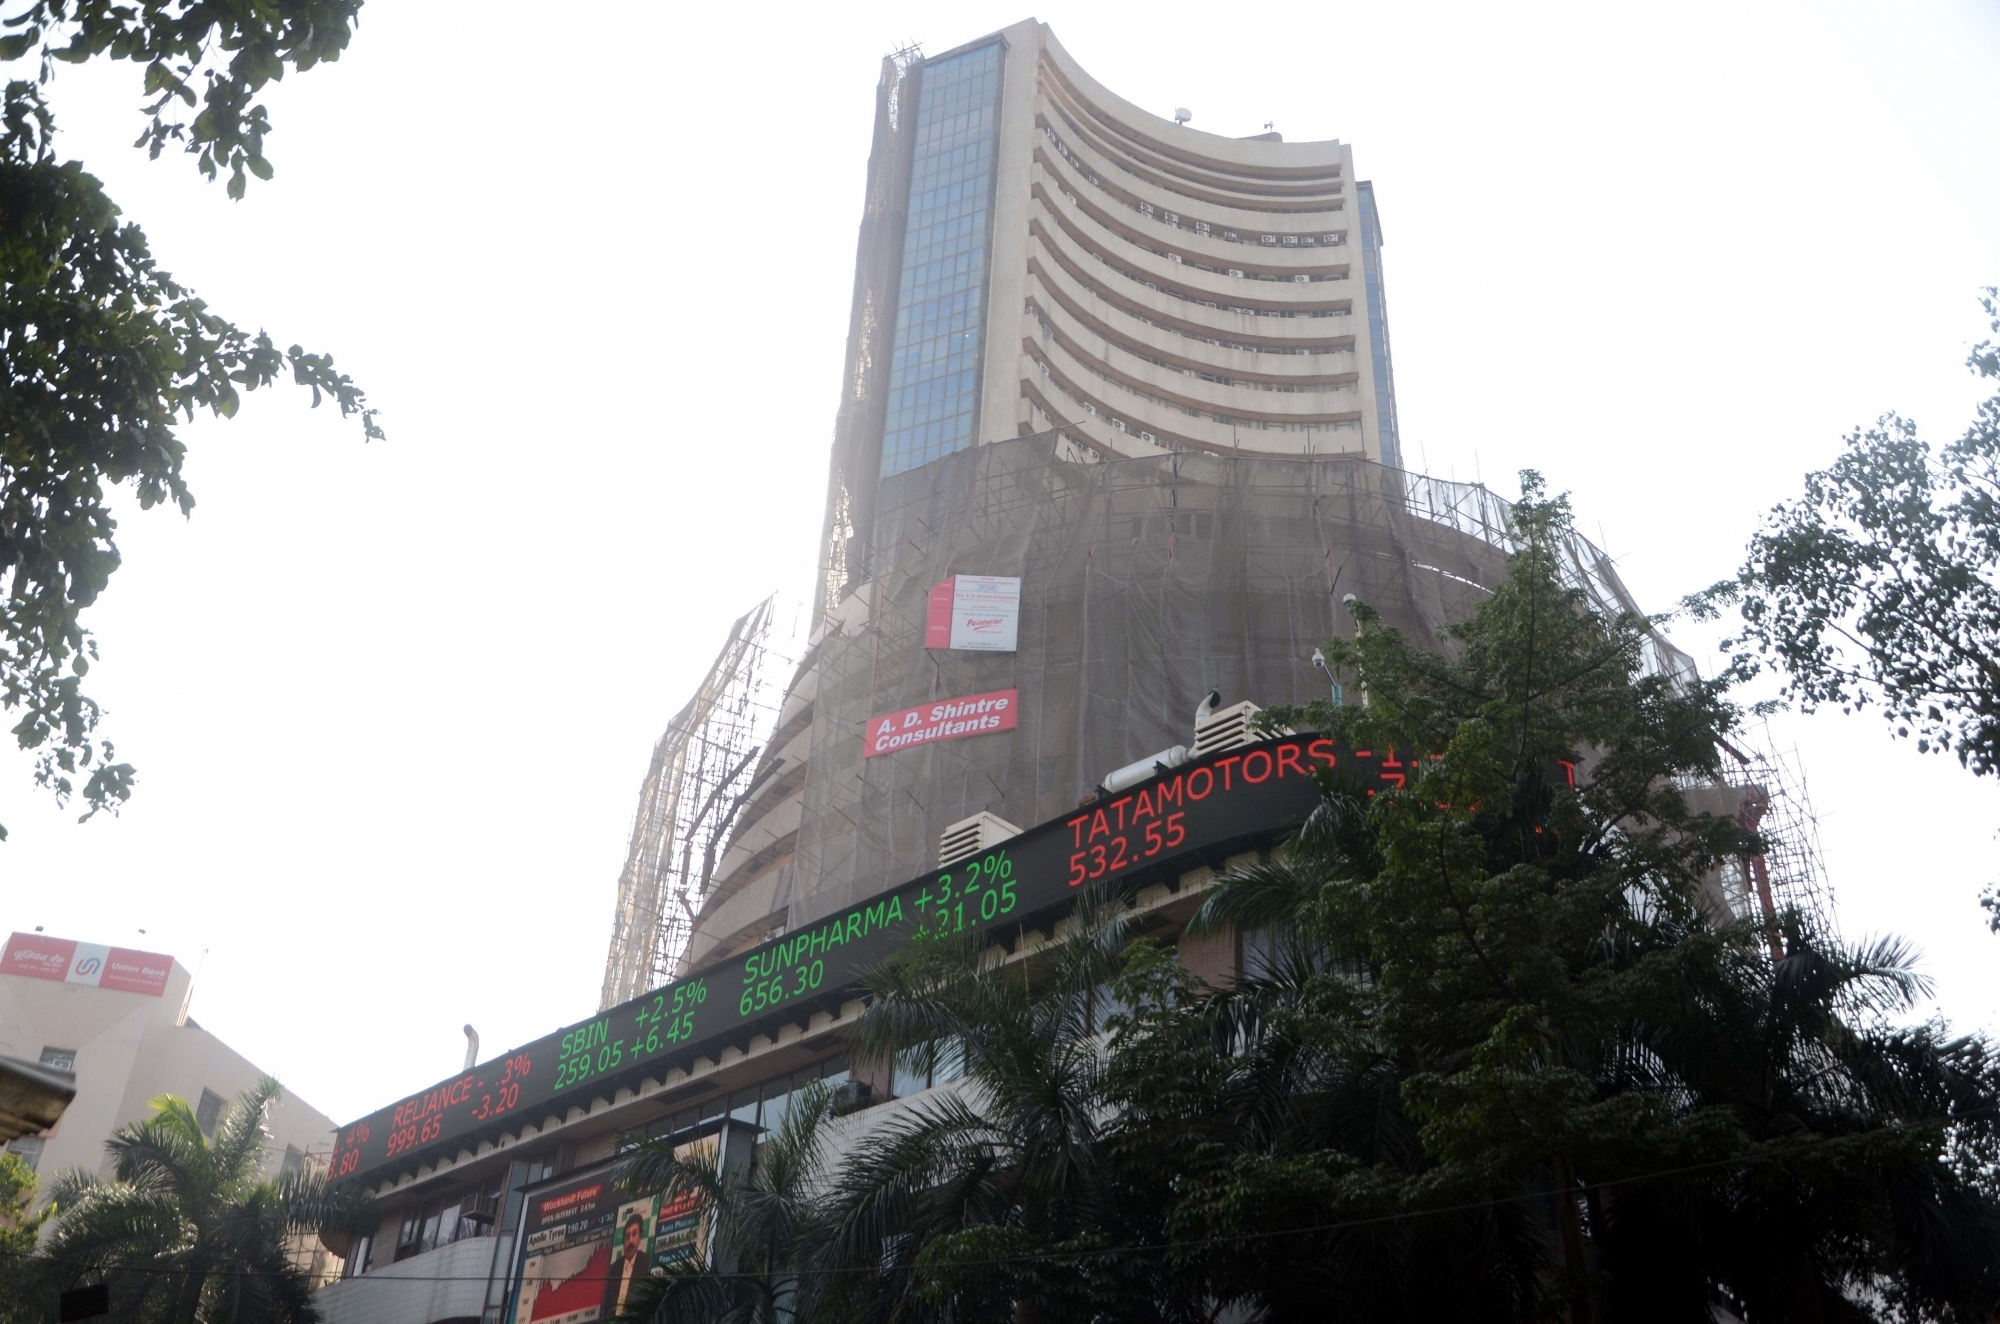 Sensex falls 90 pts, nifty at 11890 after opec production cut decision